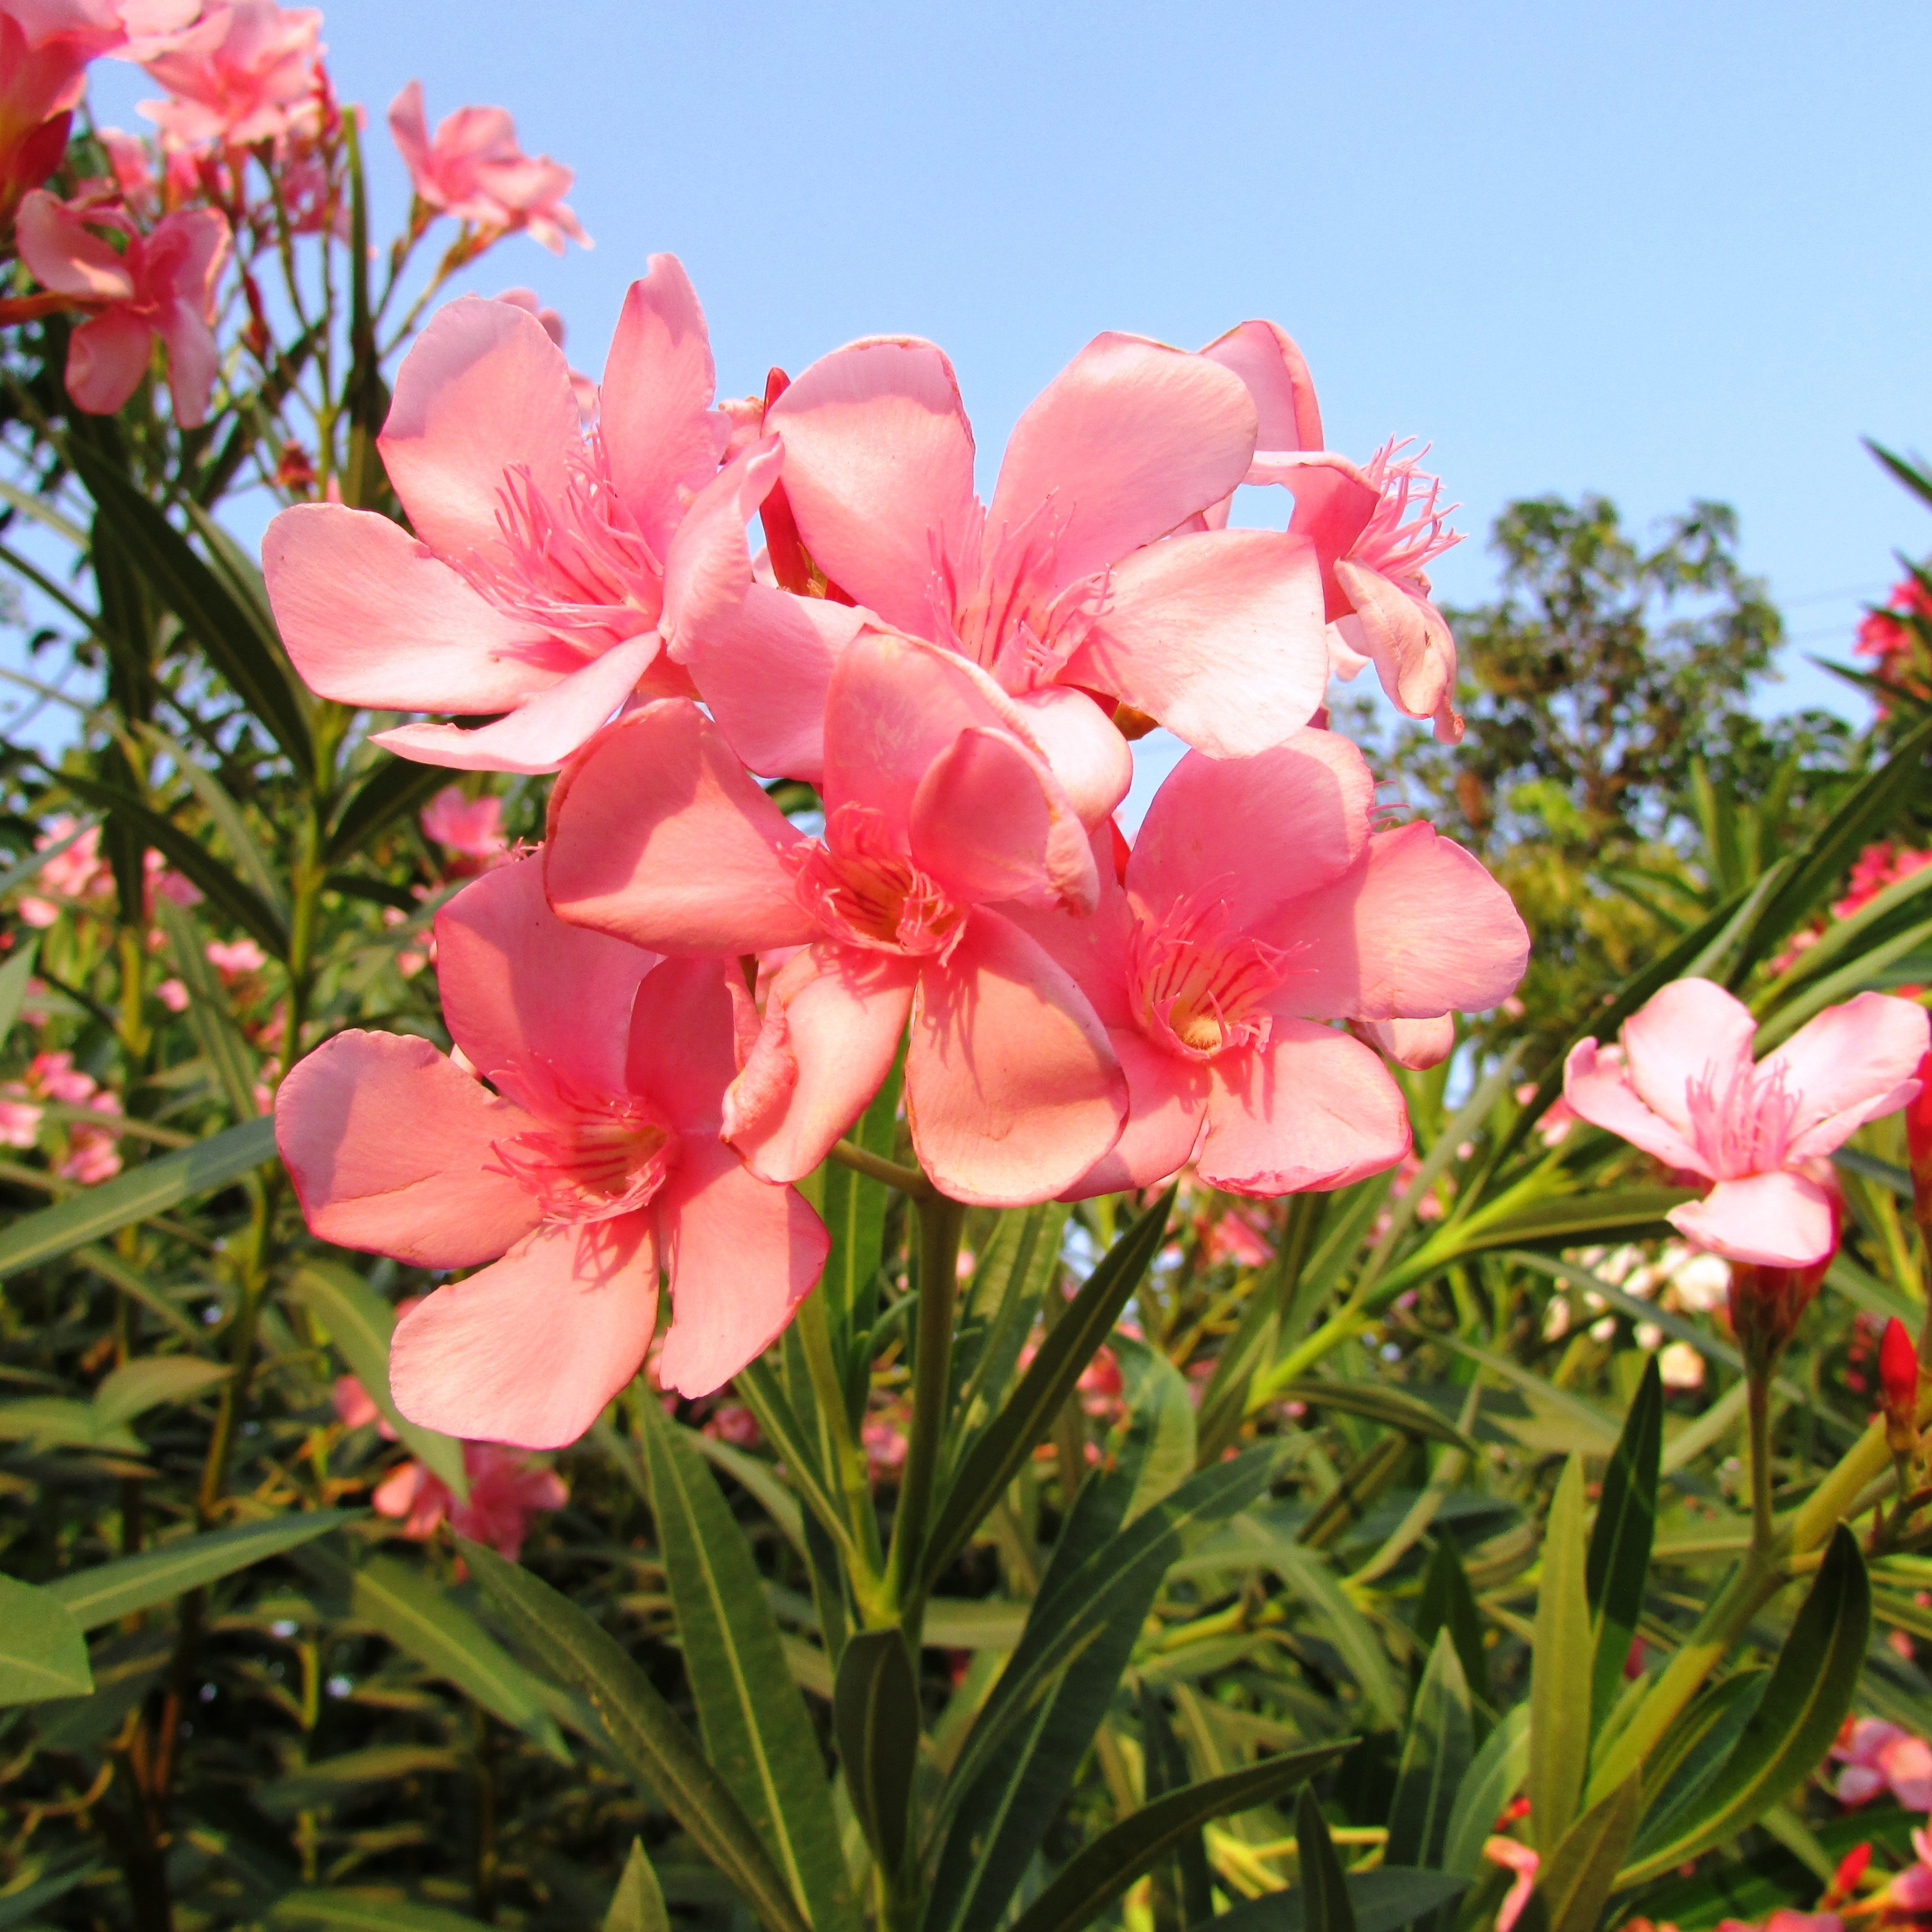 Wildflowers, Dharwad, India, Flowers, flower, pink color